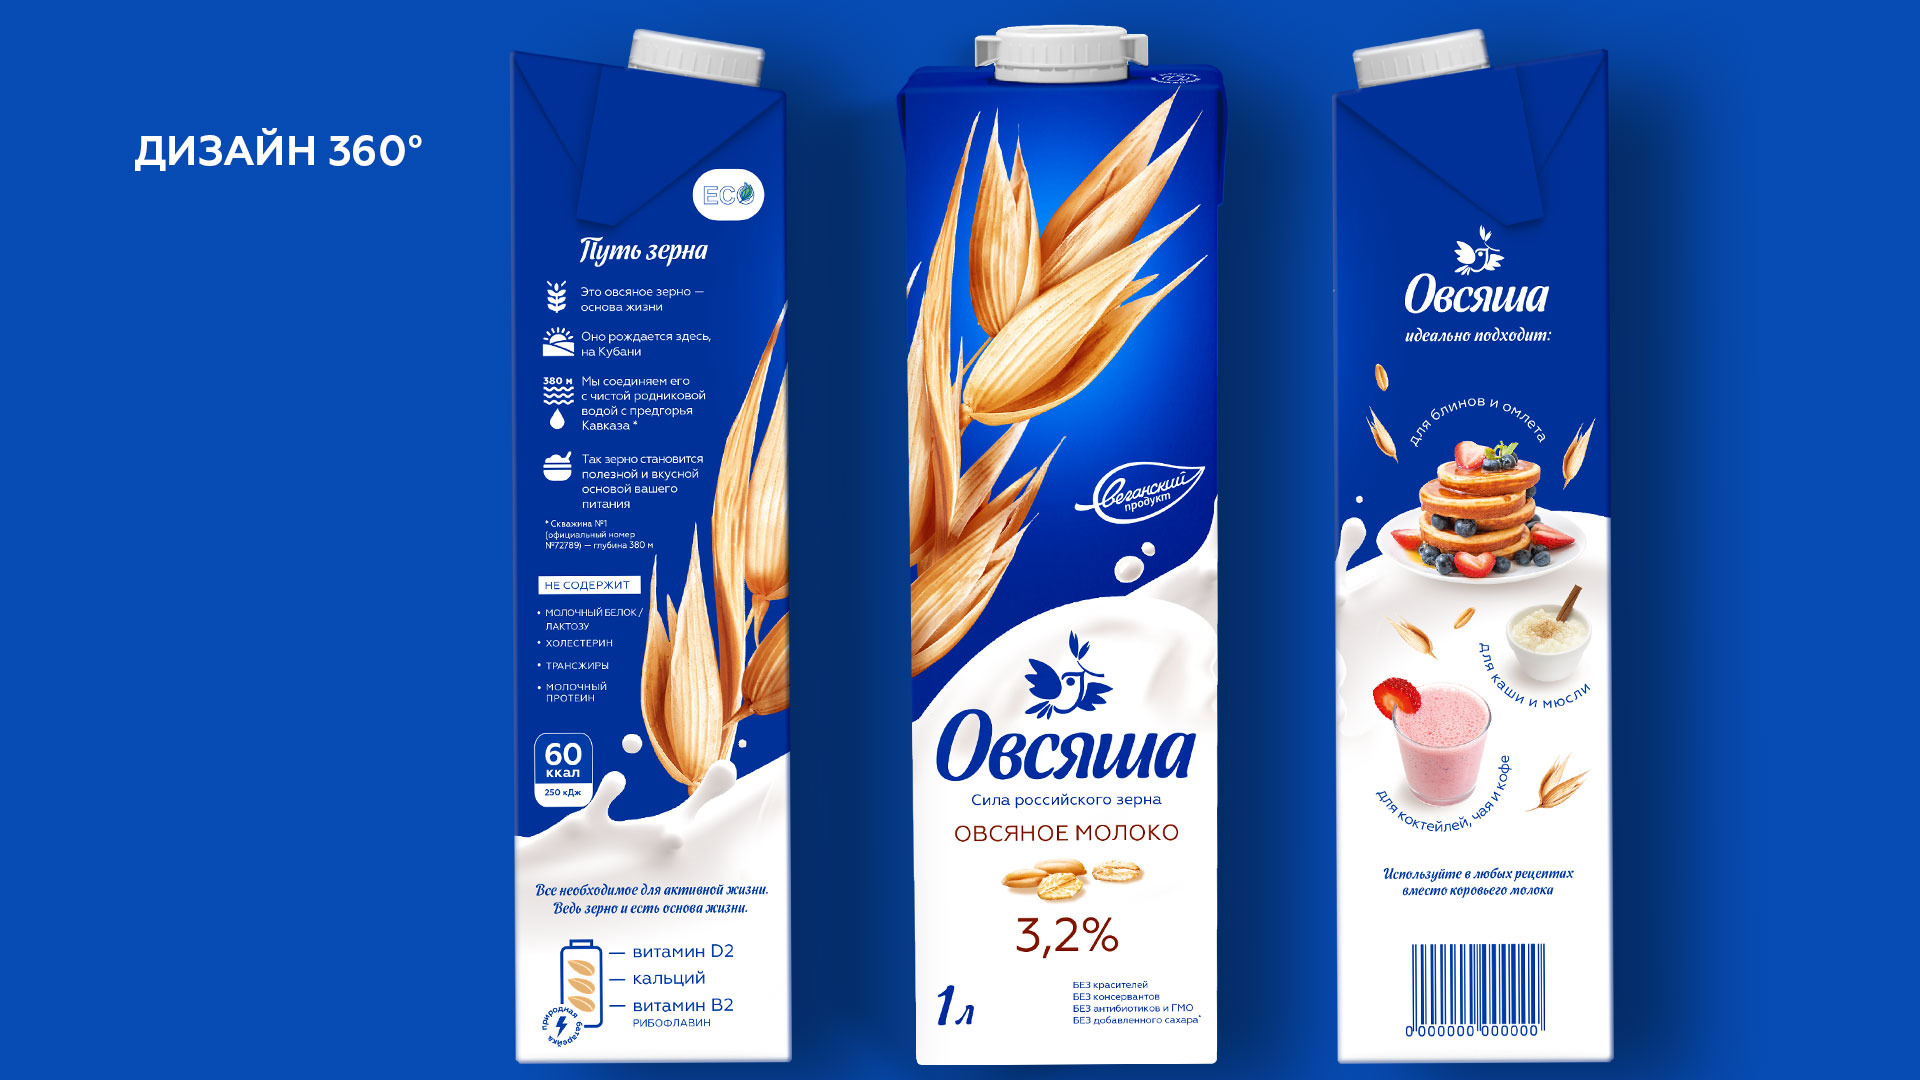 Дизайн упаковки 360 для нового бренда Овсяша